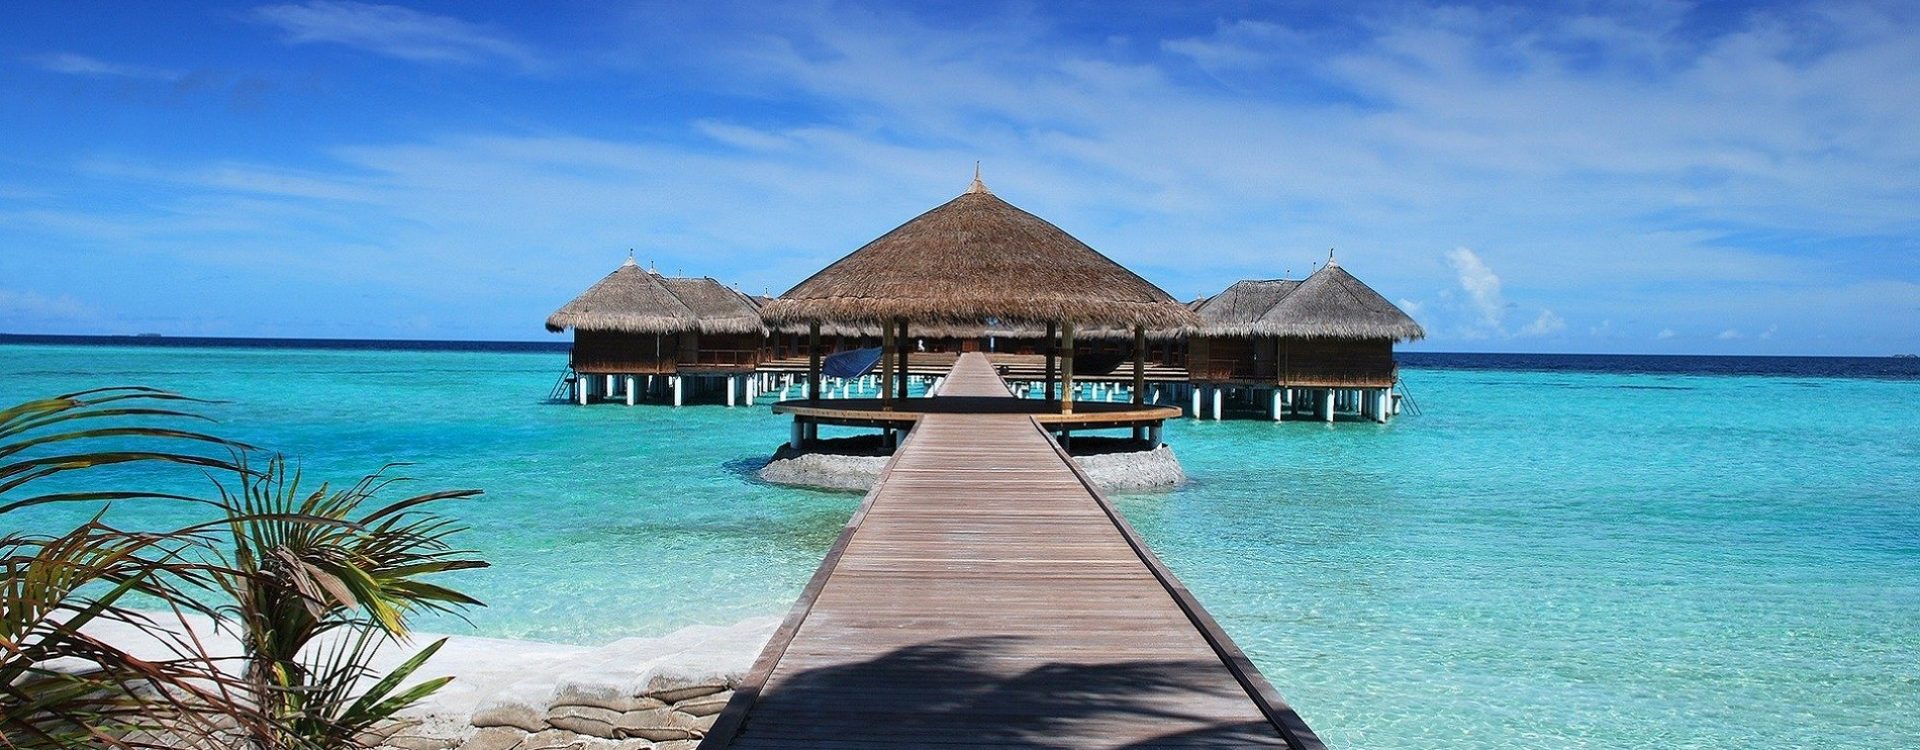 Maldivi su ideali za odmor na plaži. Putovanje na Maldive i boravak u bungalovu na plaži čini se pravim izborom za povratak u život.